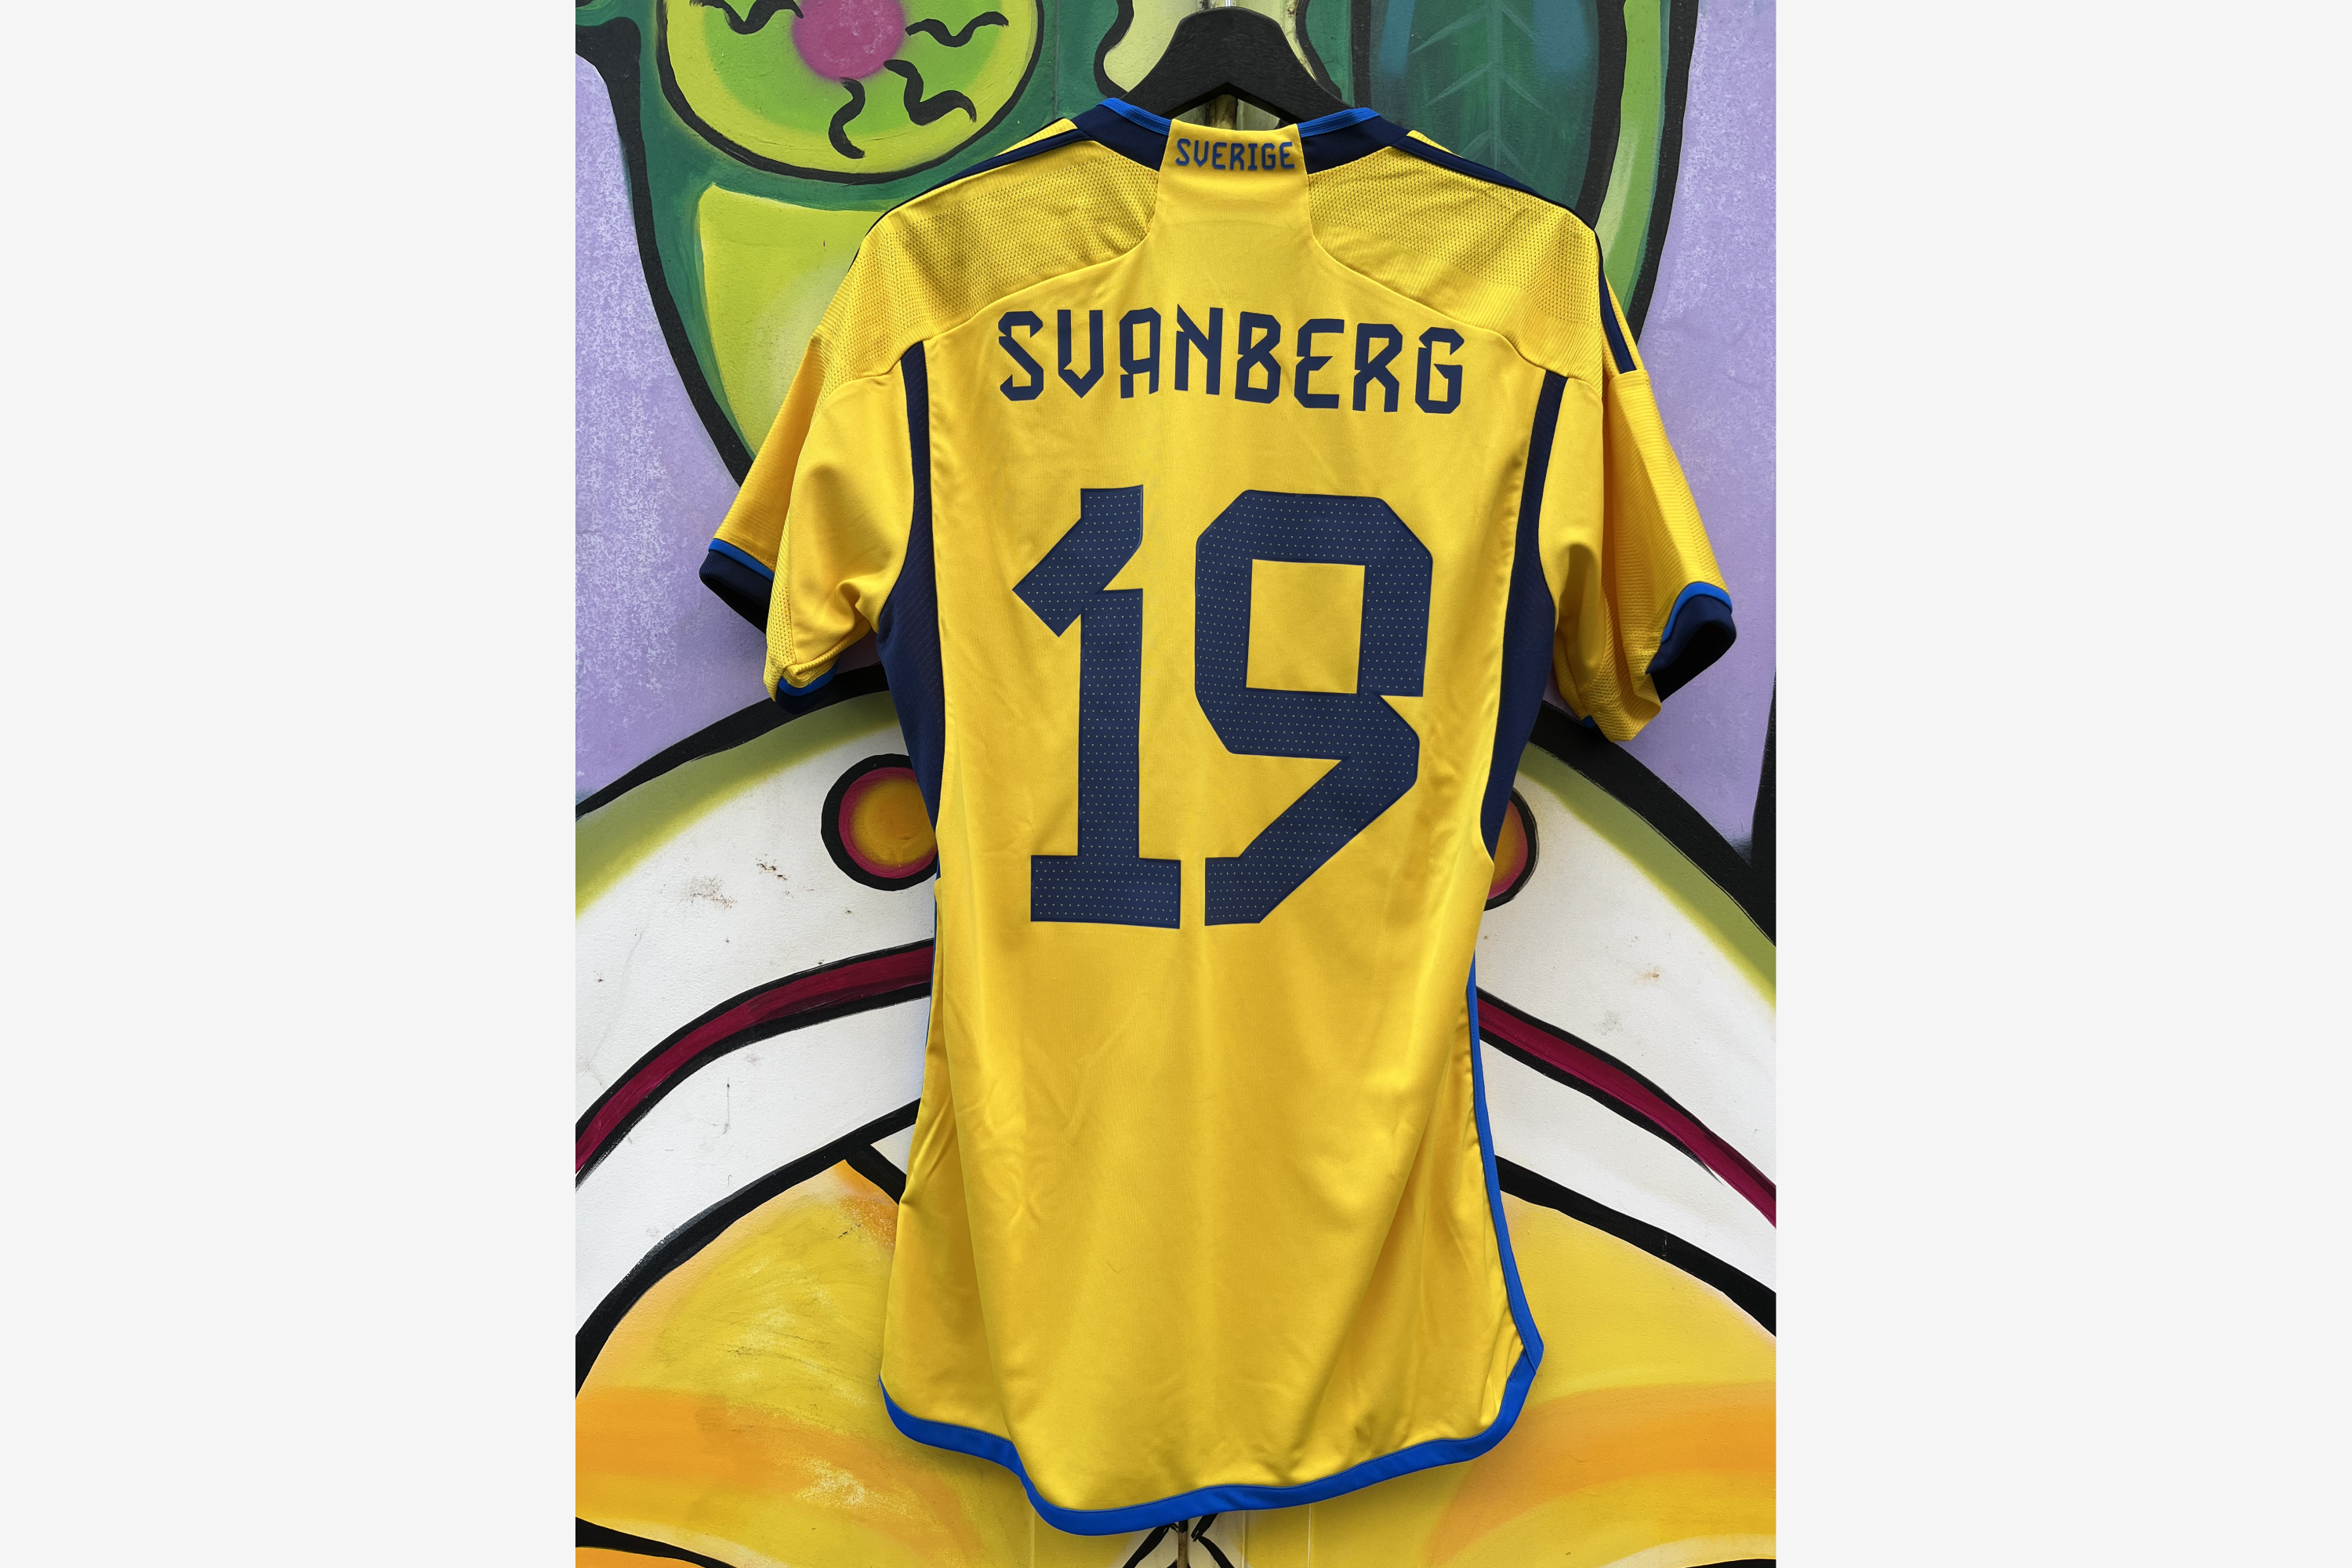 Adidas - Sweden 2022/23 Home Football Shirt Sweden - Belgium 'SVANBERG' (Match Worn)